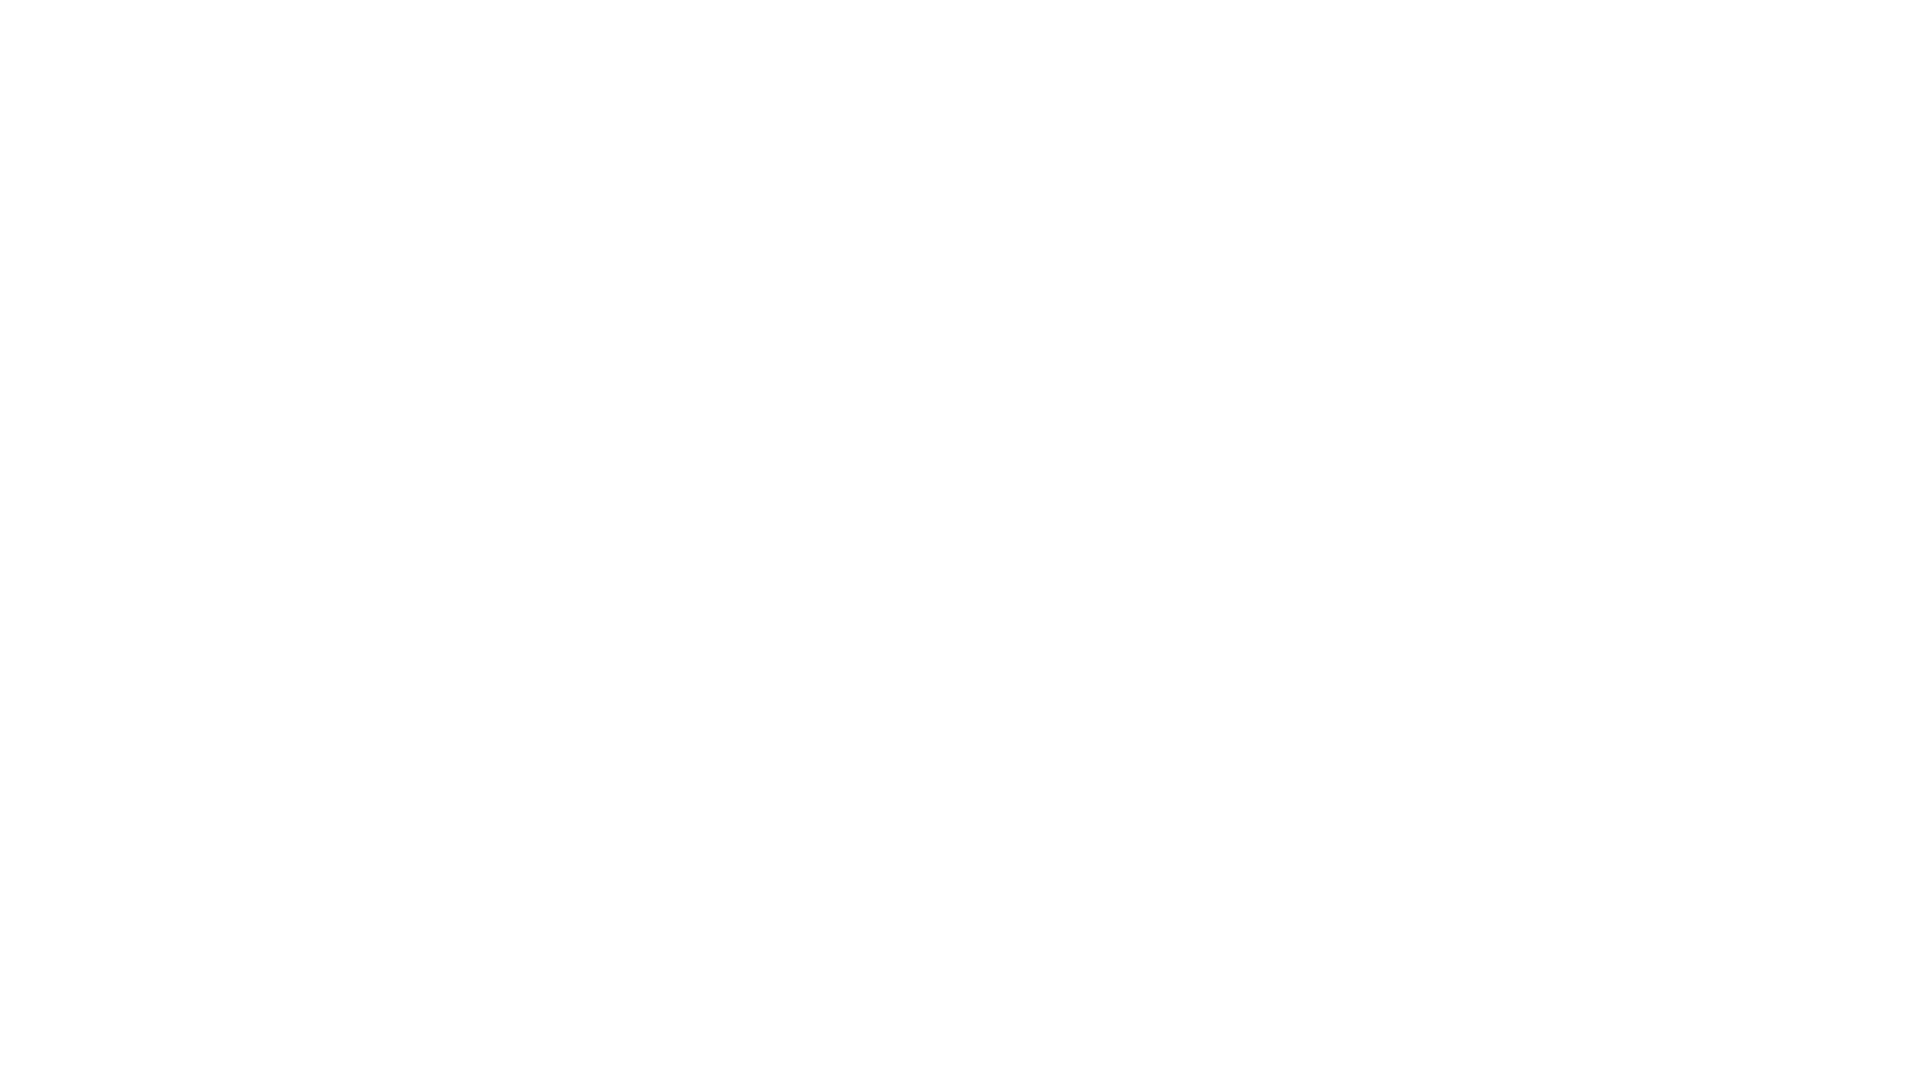 Dg telecom